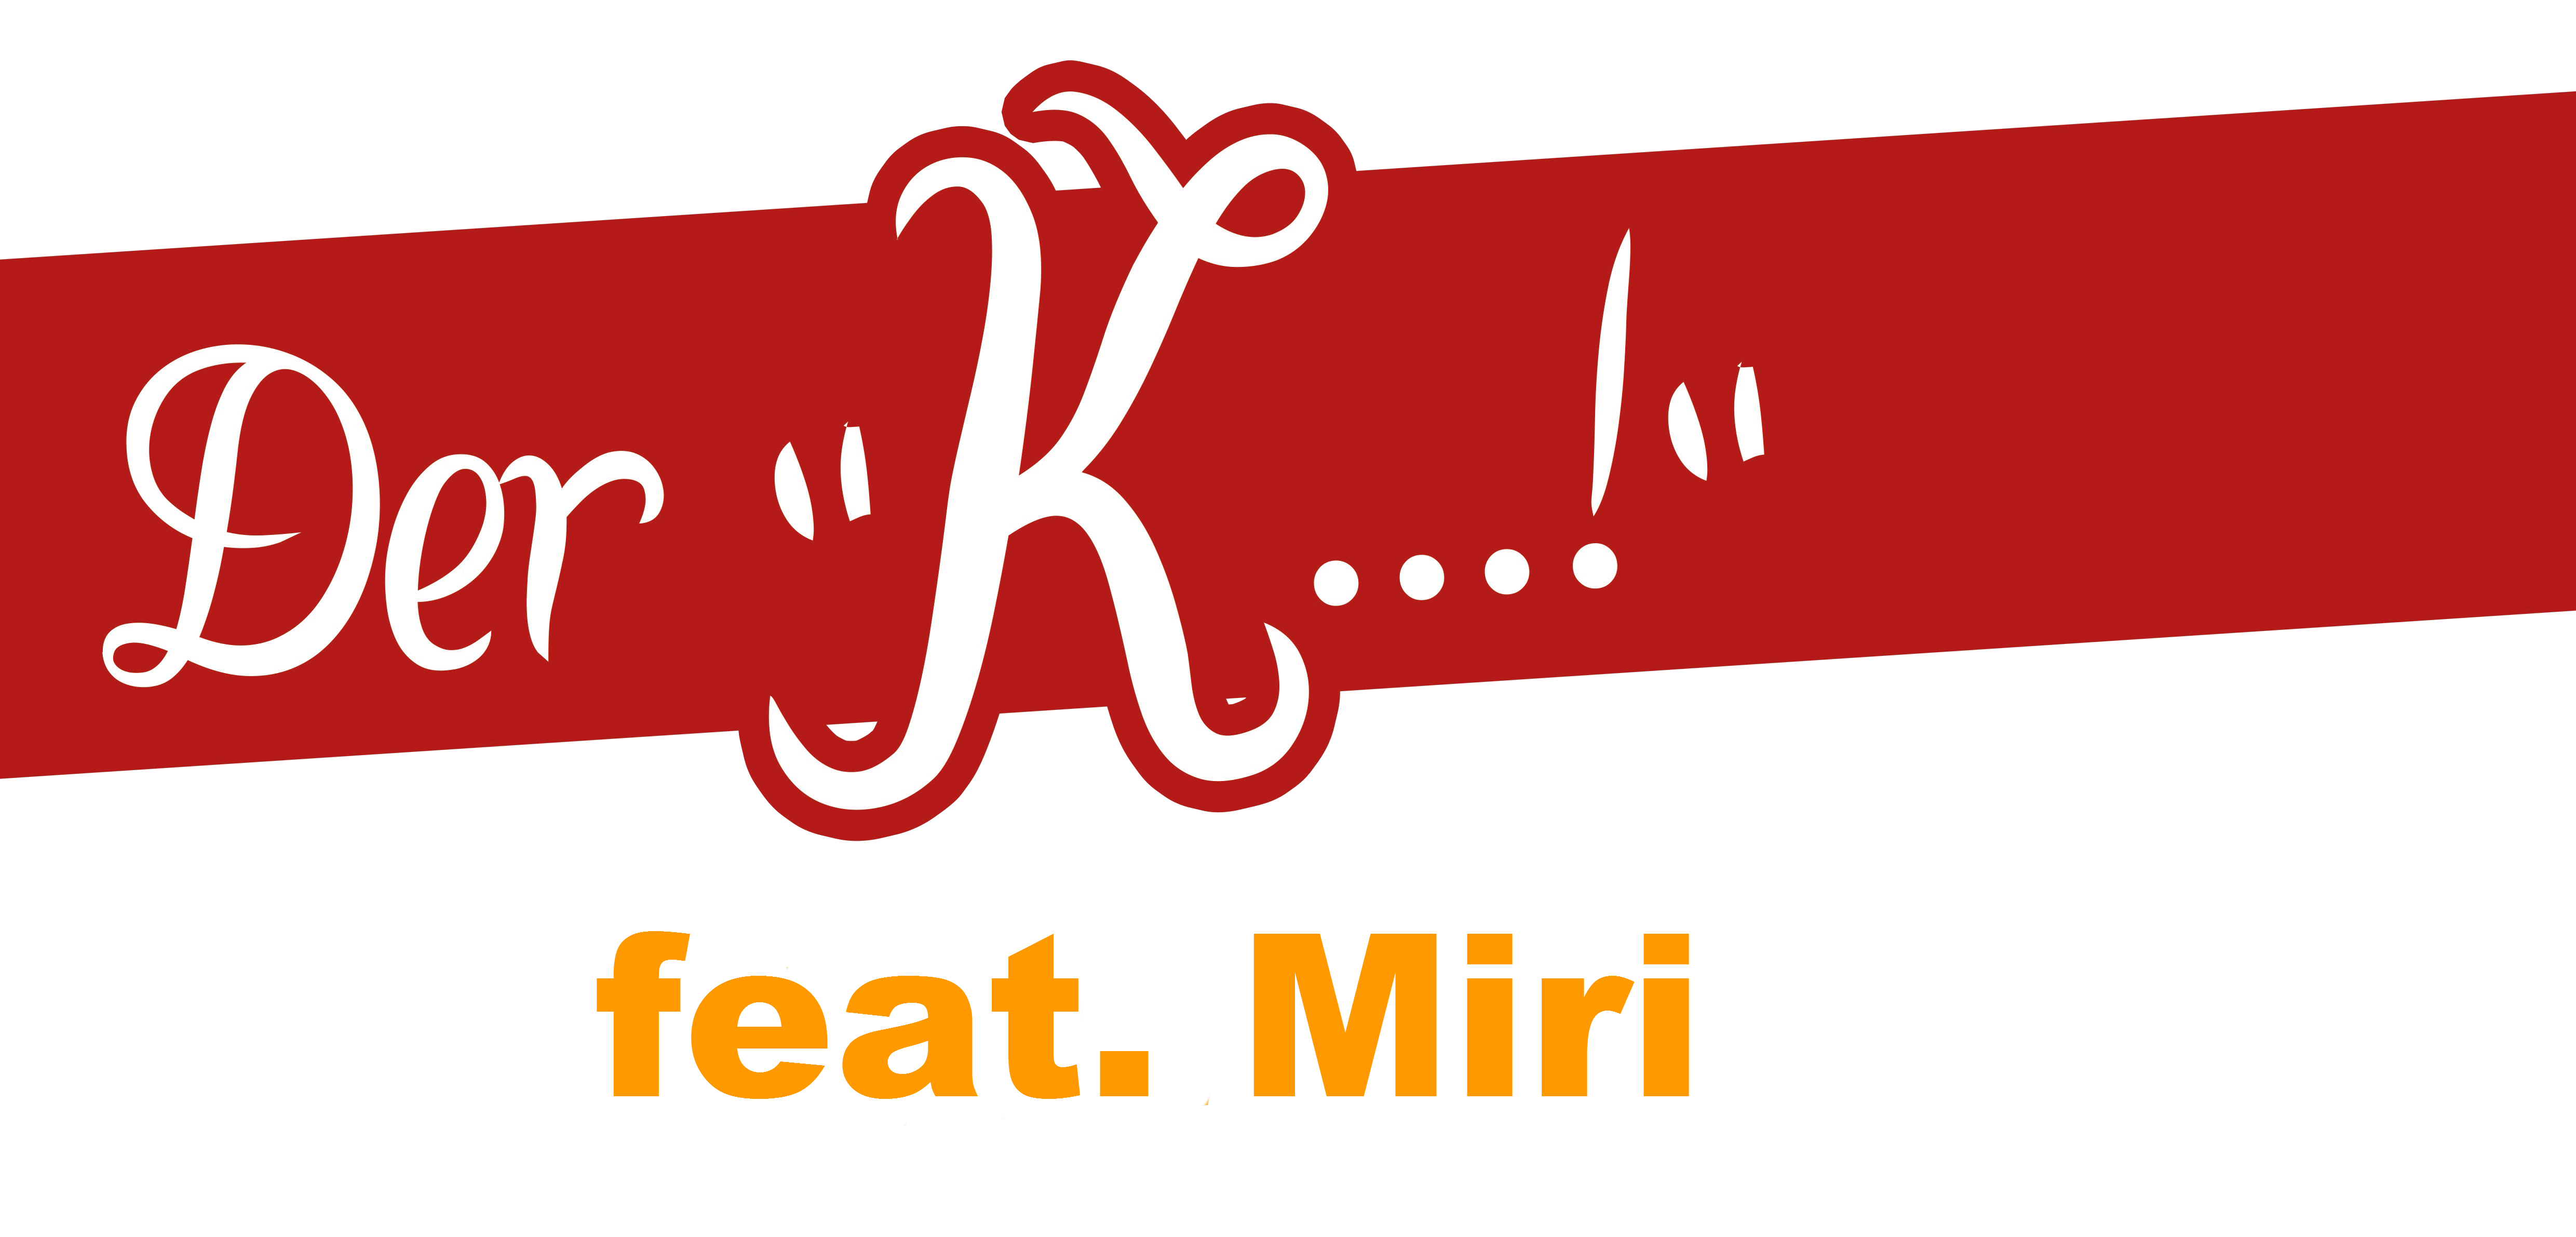 Der "K...!" feat. Miri